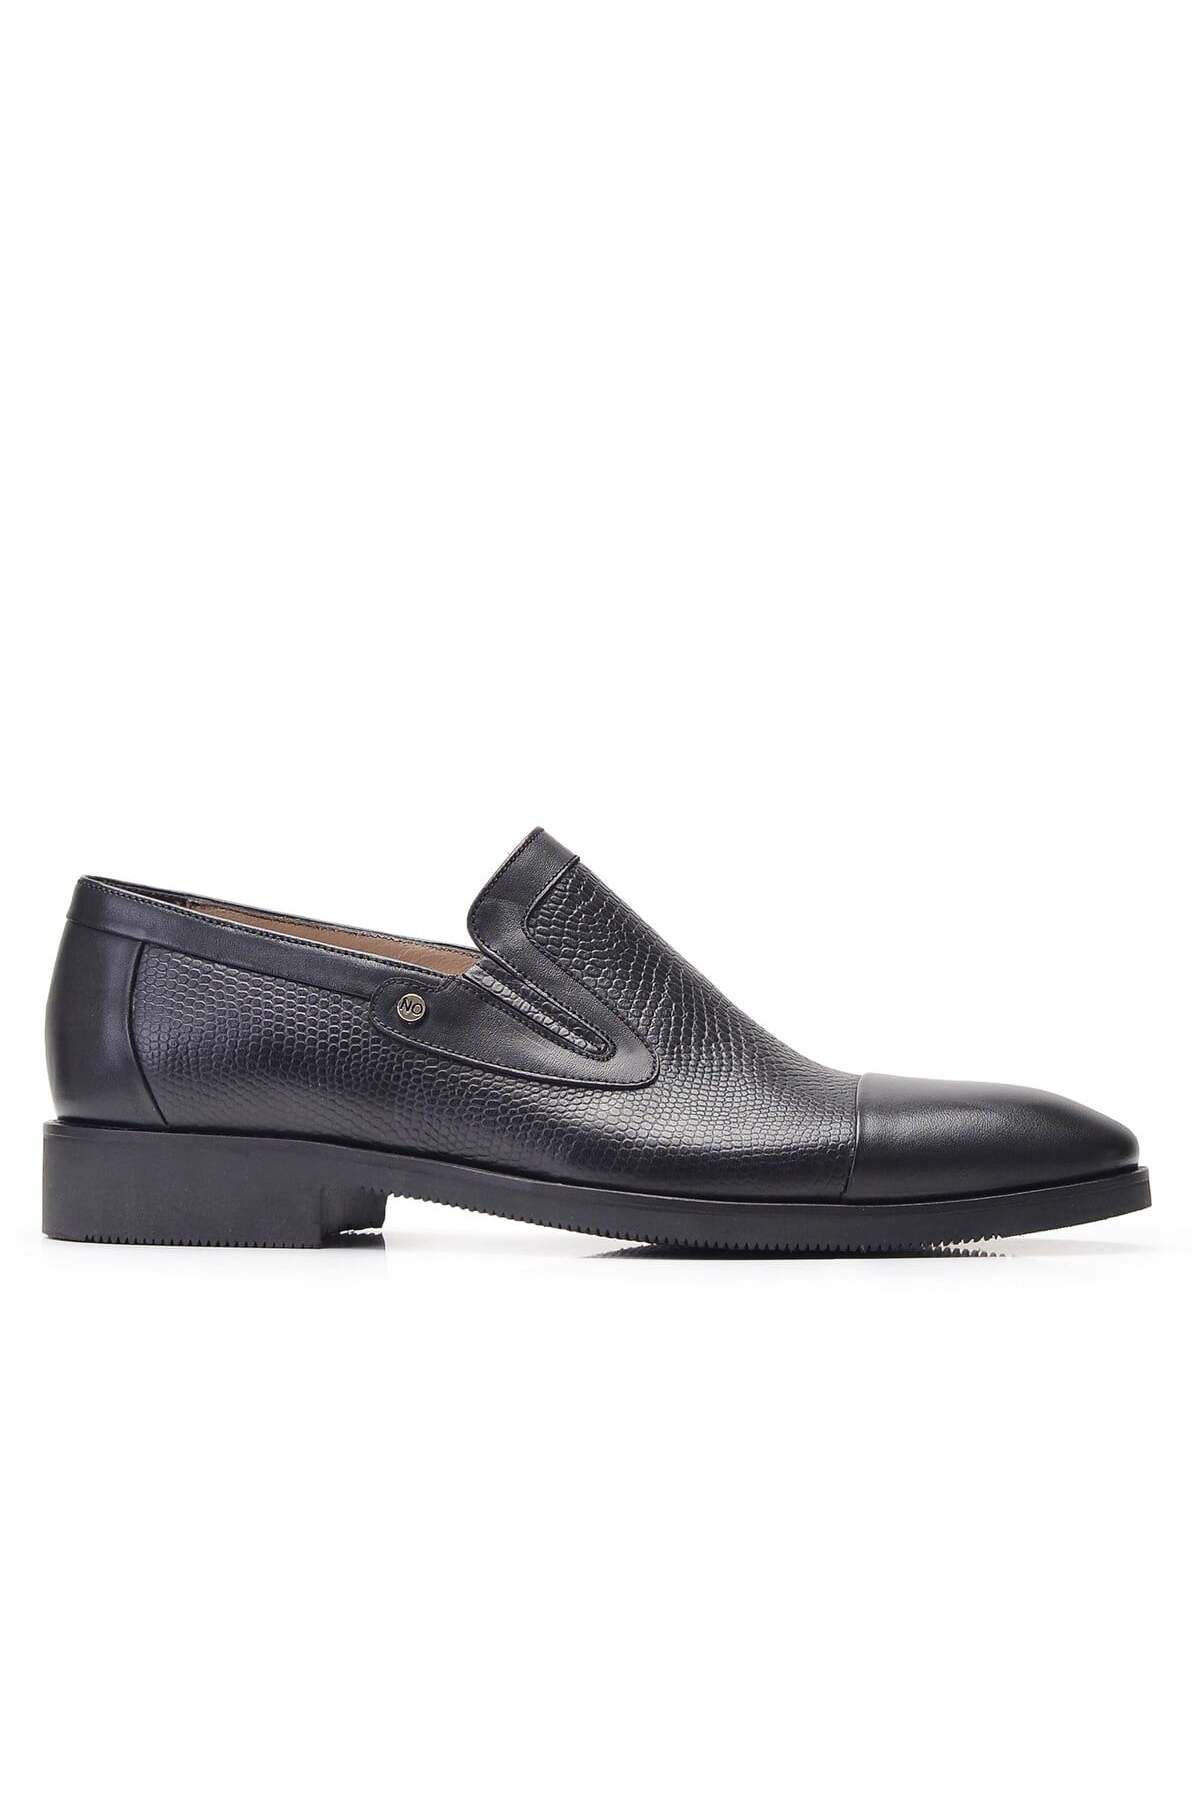 Nevzat Onay Siyah Klasik Loafer Erkek Ayakkabı -11853-